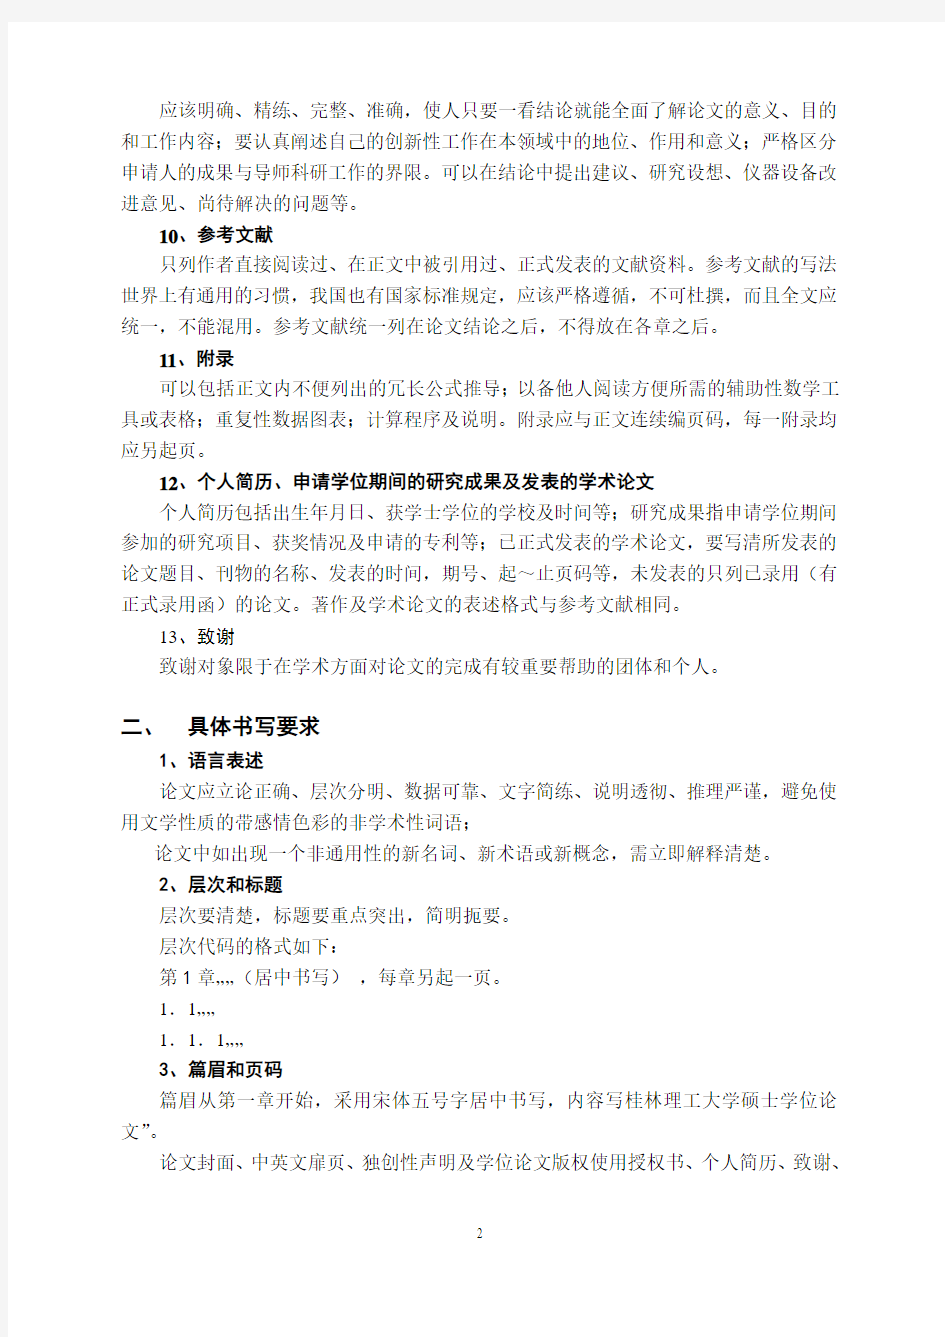 1.桂林理工大学硕士论文书写指南(科学学位和专业学位)